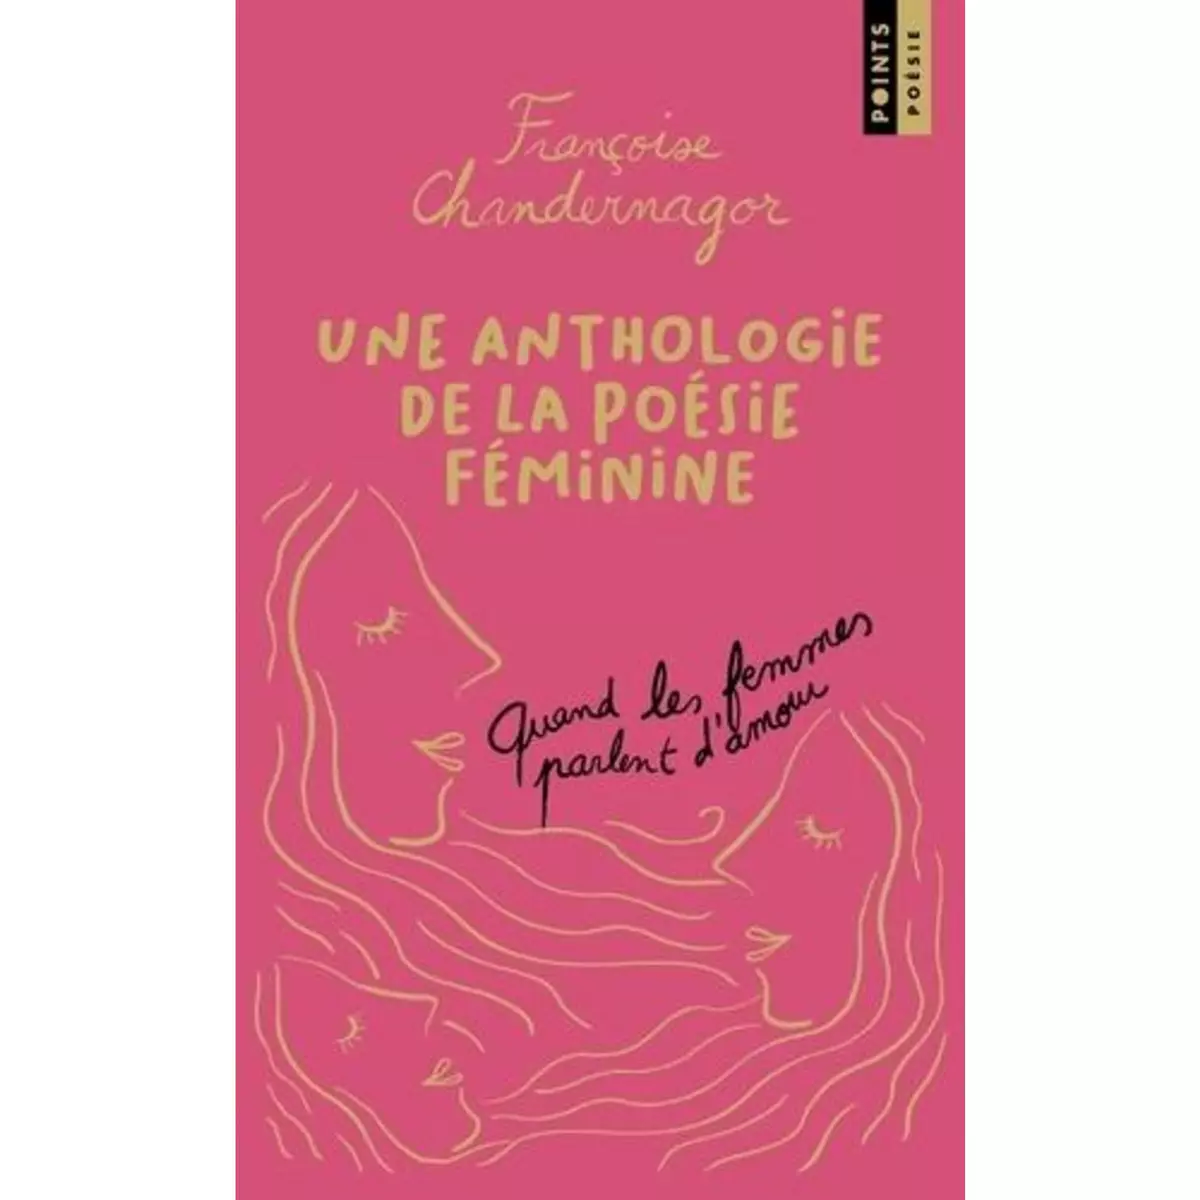  QUAND LES FEMMES PARLENT D'AMOUR. UNE ANTHOLOGIE DE LA POESIE FEMININE, EDITION COLLECTOR, Chandernagor Françoise